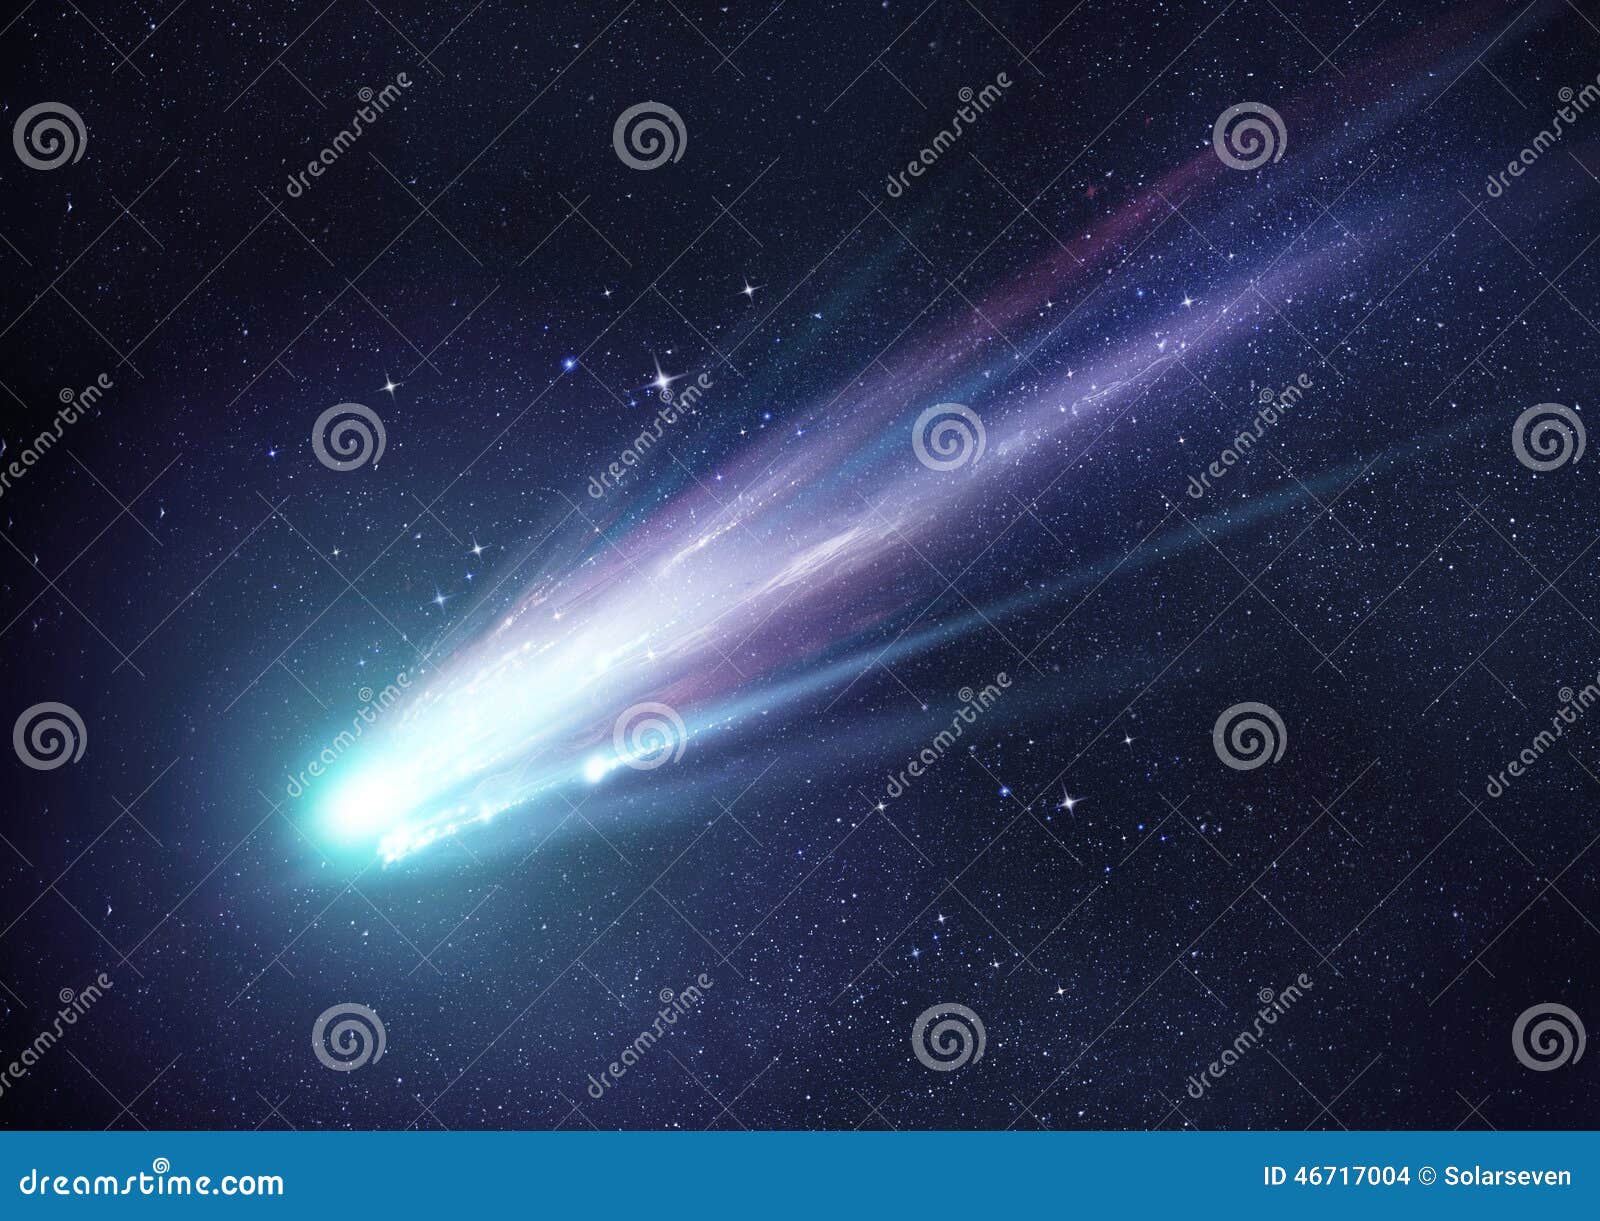 super bright comet at night